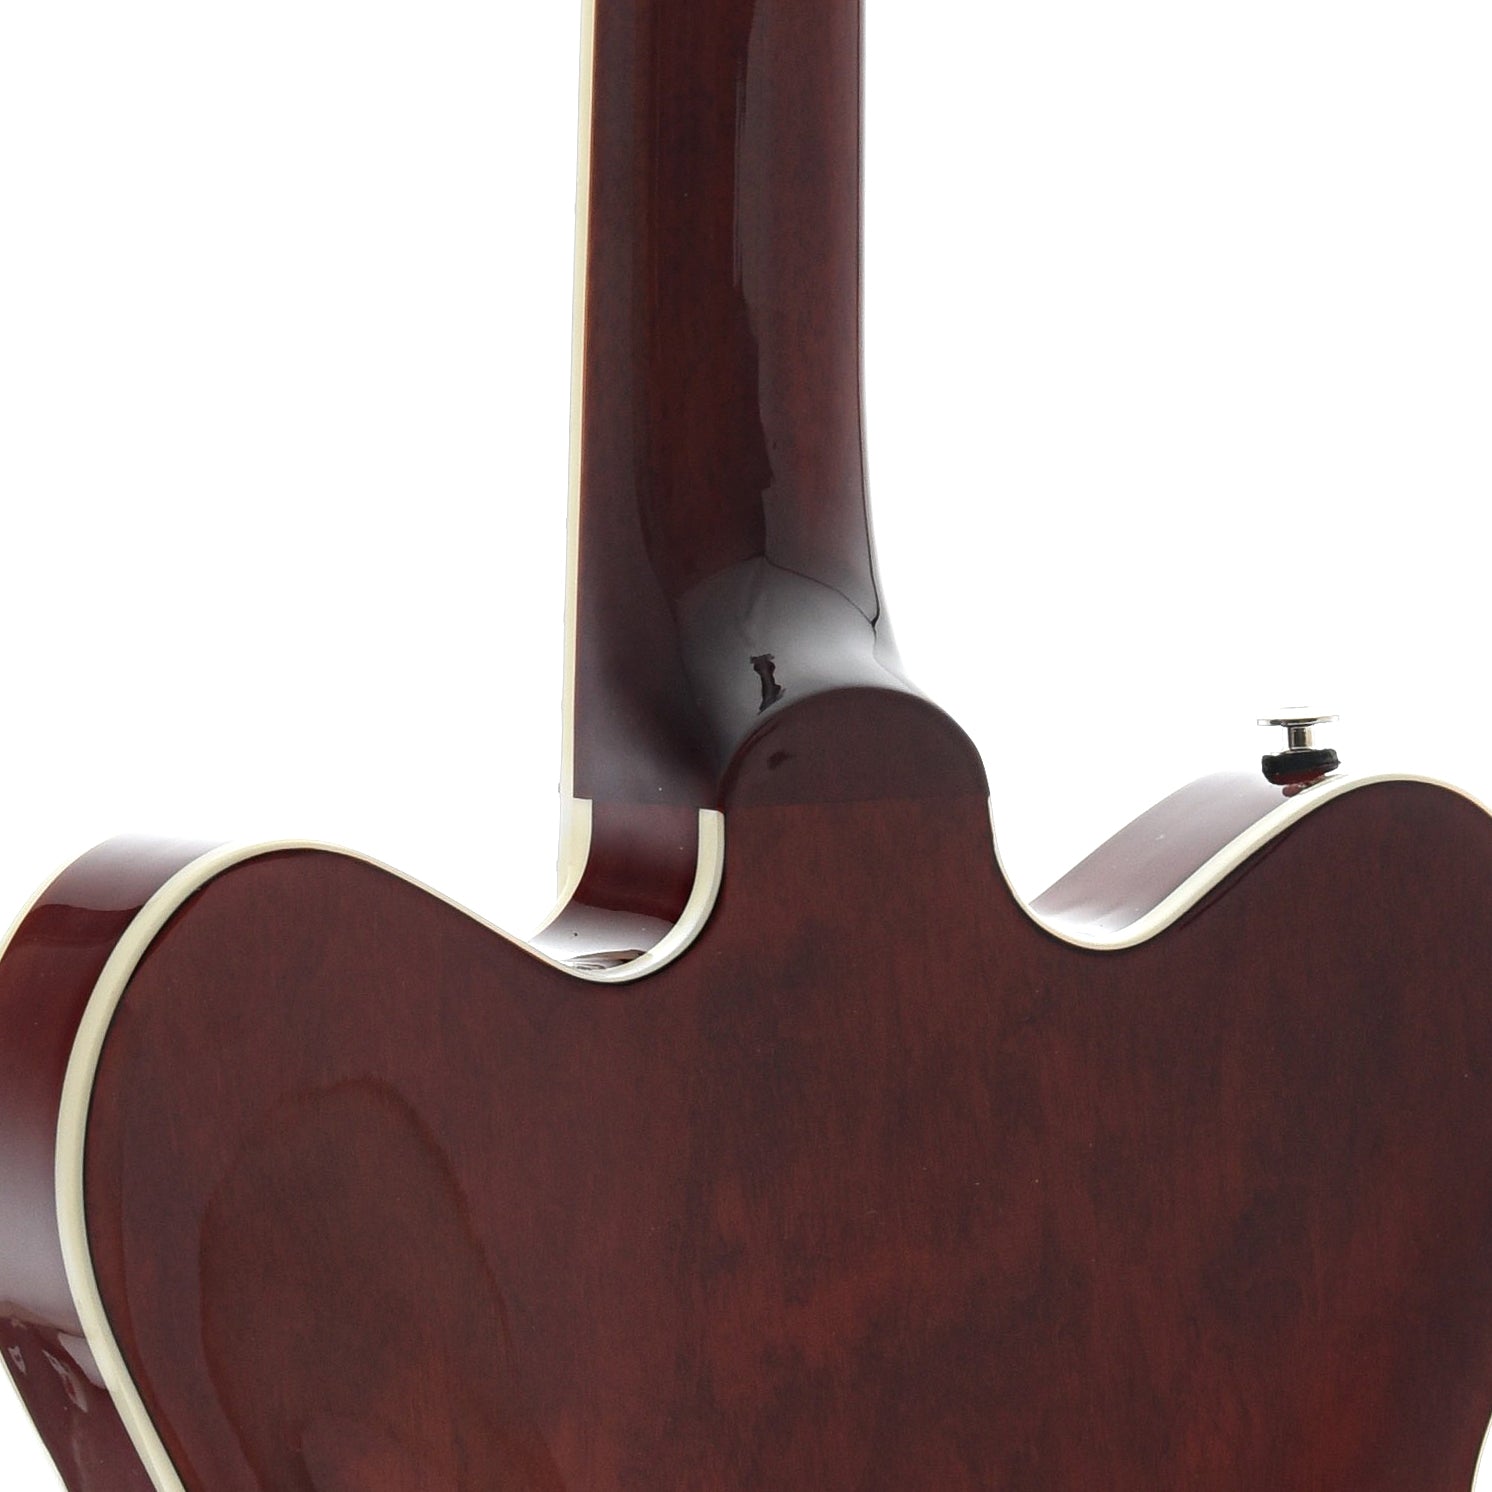 Neck Joint of Gretsch G2622 Streamliner Center-Block Double Cutaway Hollow Body Guitar